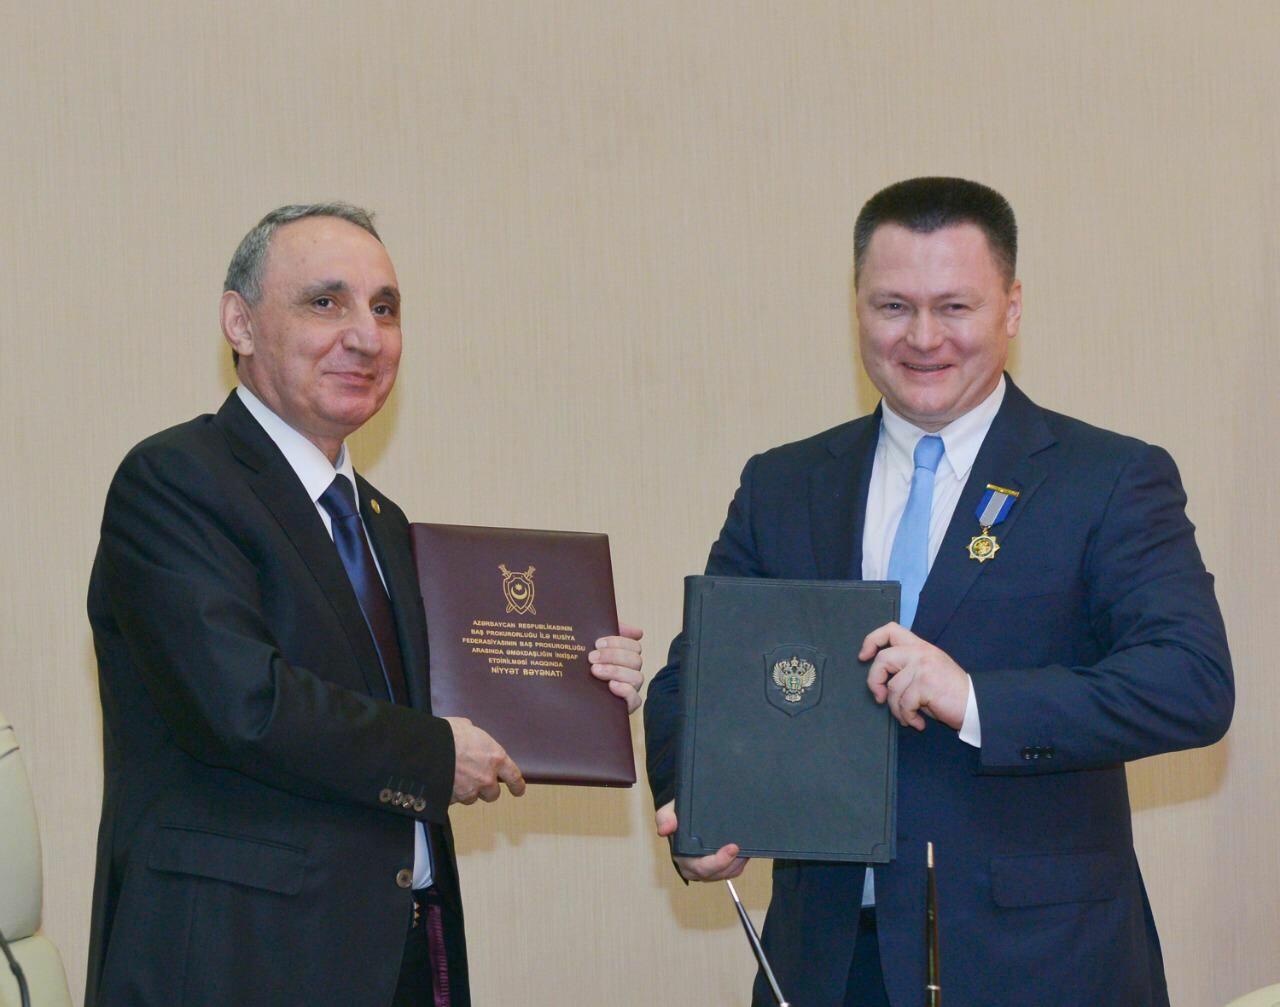 Кямран Алиев провел переговоры с российским коллегой